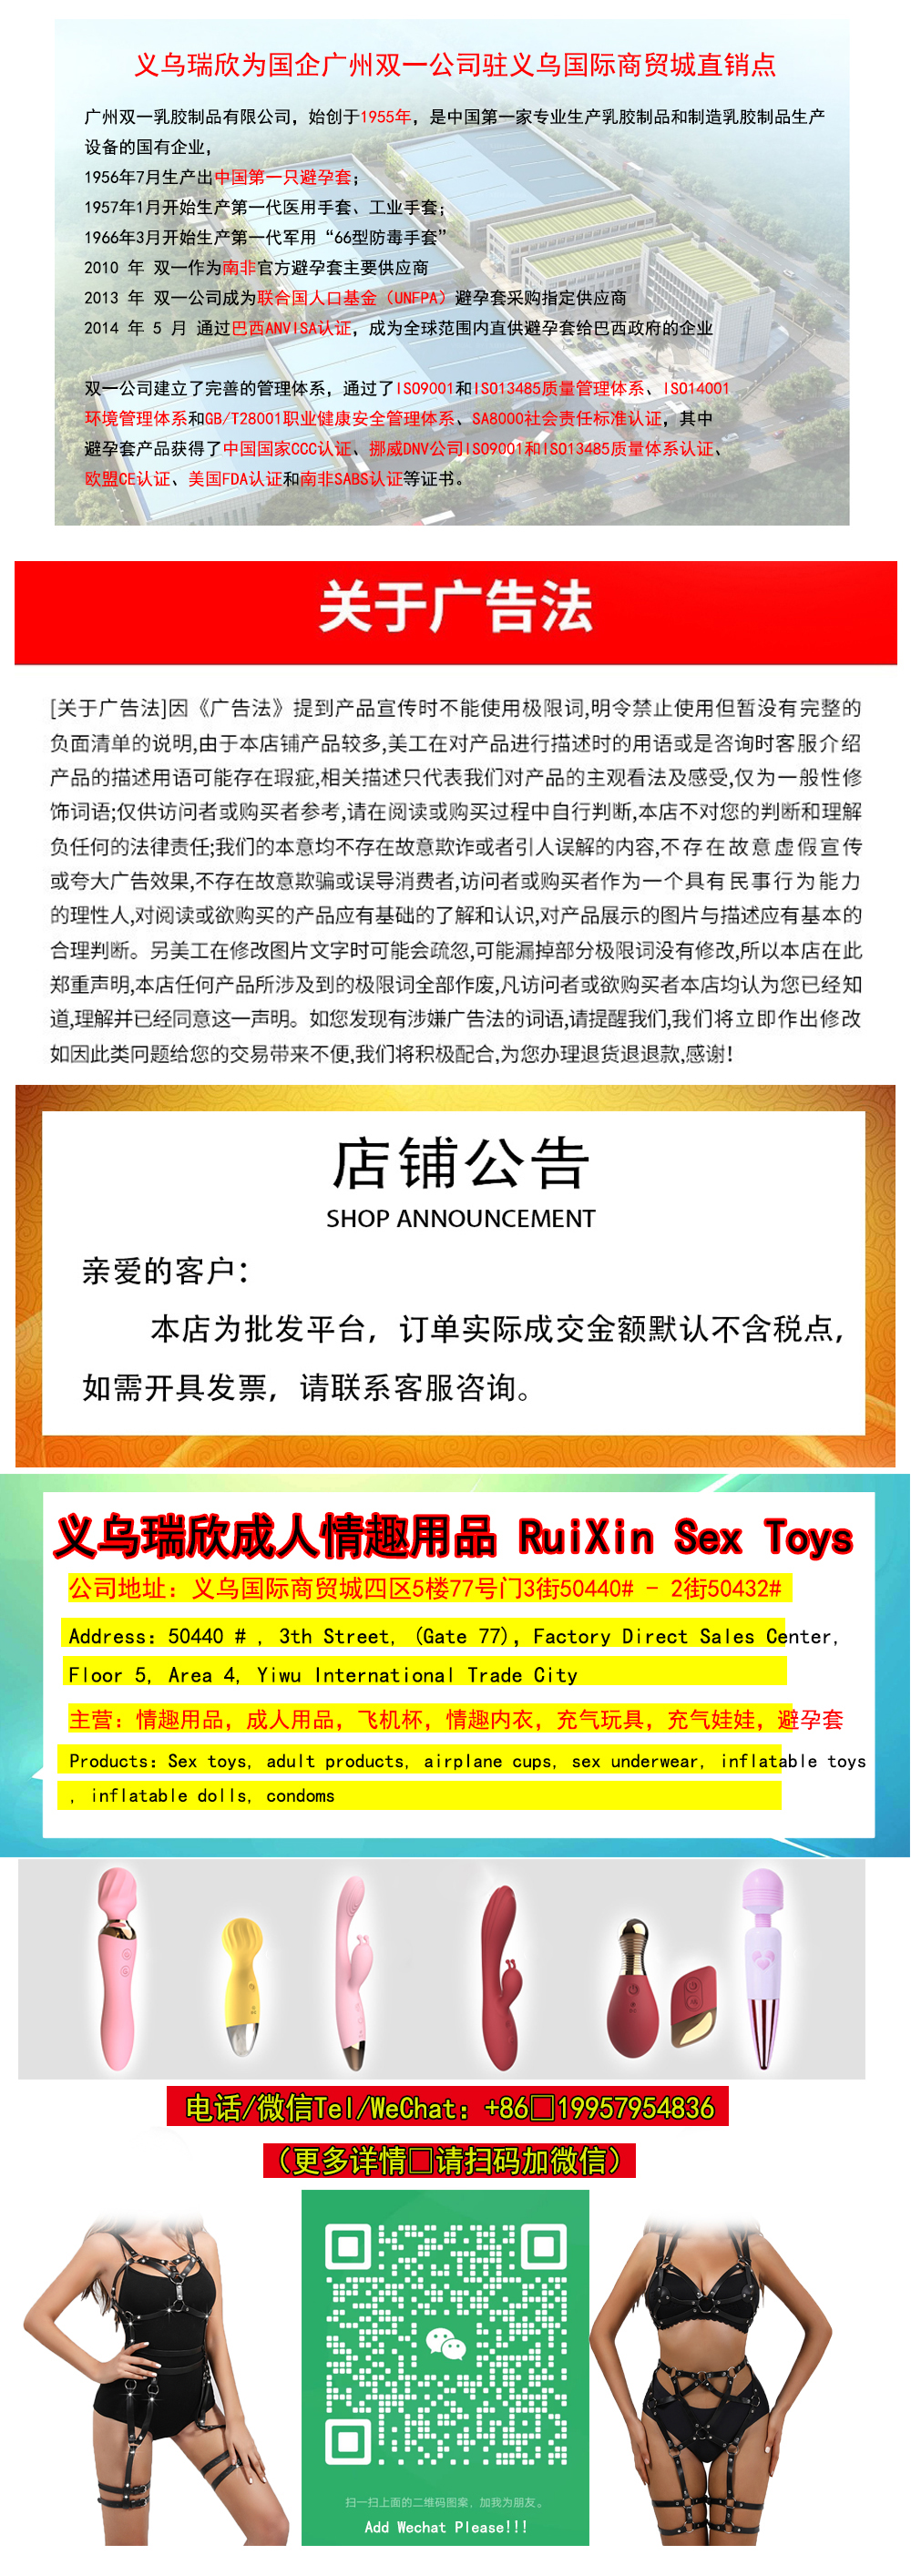 全硅胶仿真人娃娃版成人日韩男用自慰器情趣用品性玩具详情1